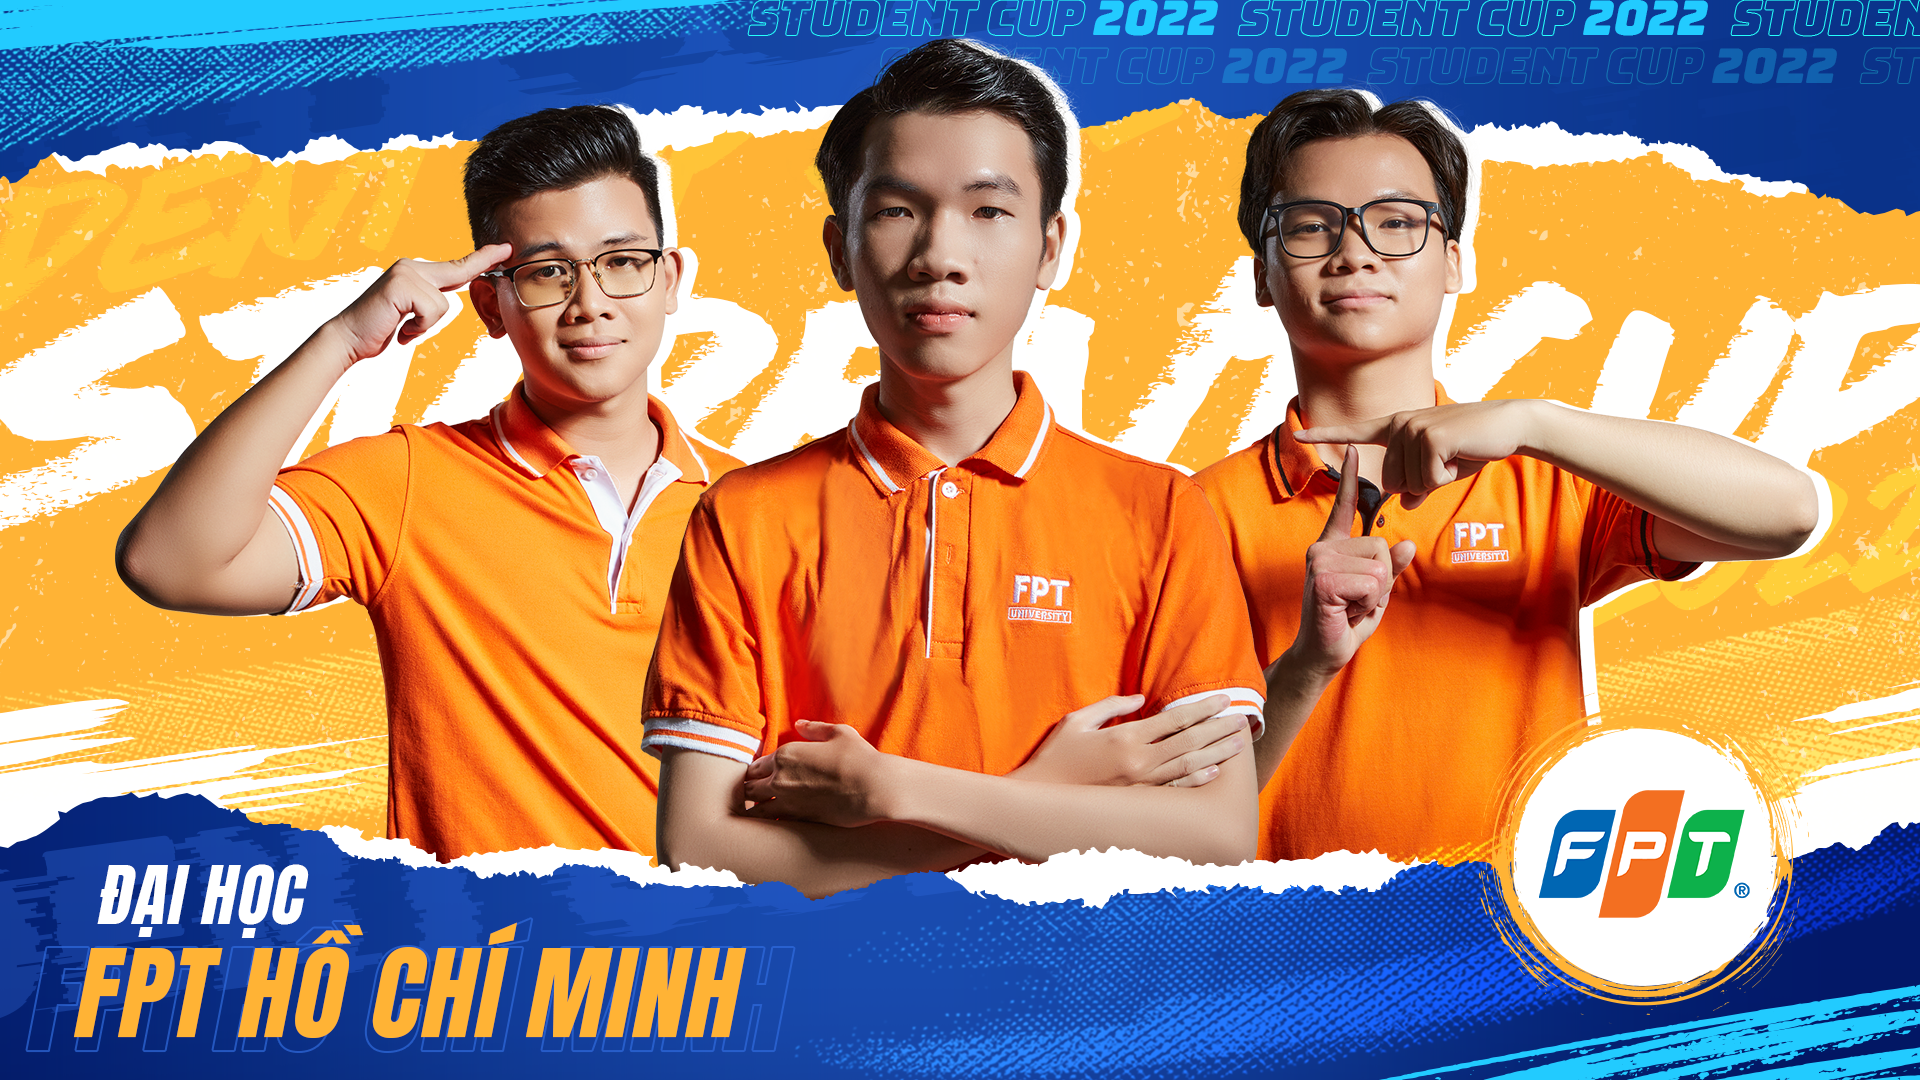 Top 8 mạnh nhất lộ diện, bùng nổ giải đấu FIFA Online 4 hàng đầu dành cho sinh viên Việt Nam - ảnh 3